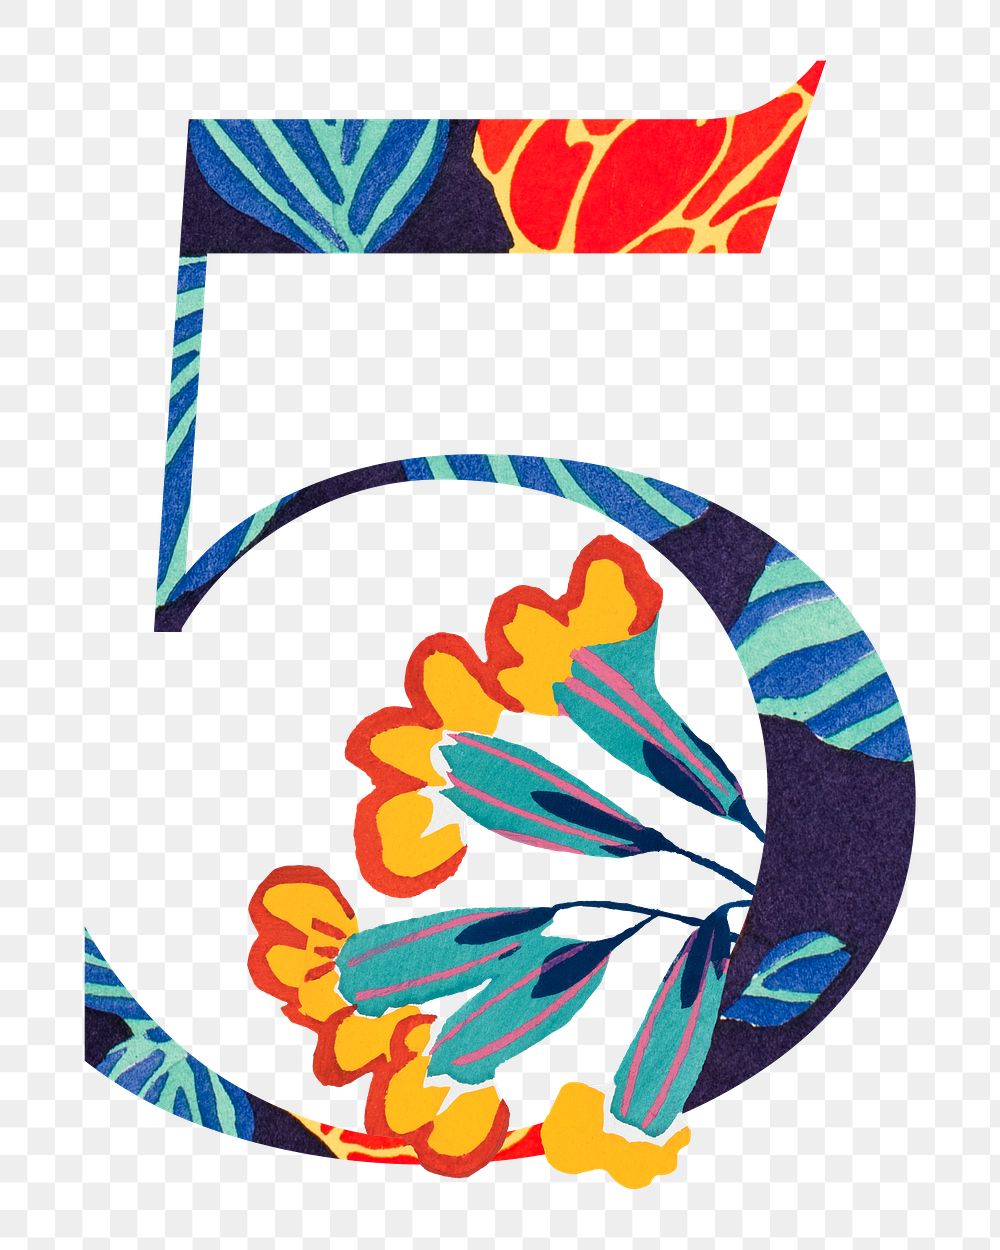 Number 5 png Seguy Papillons art illustration, transparent background